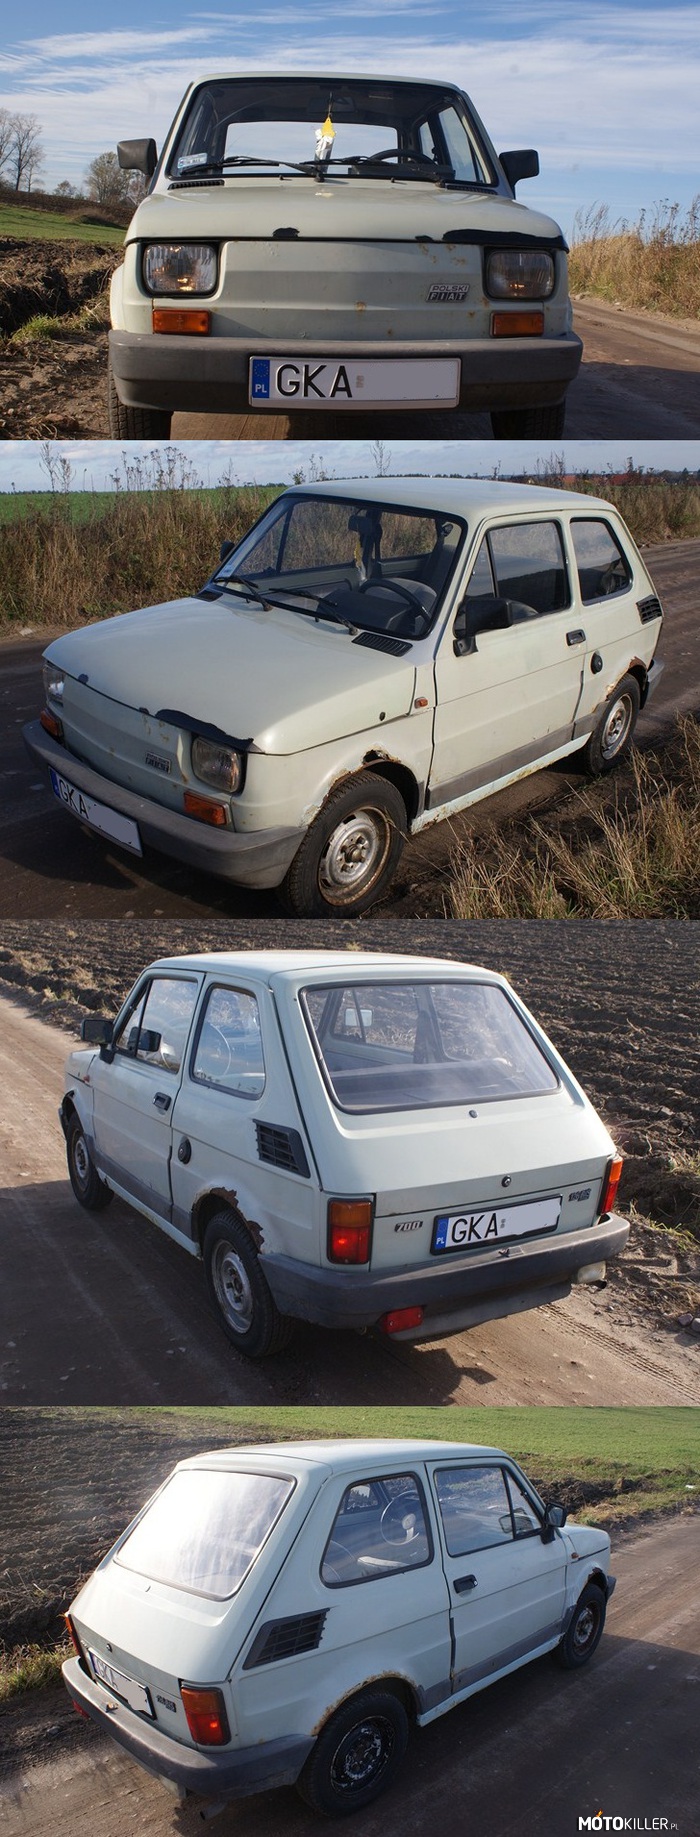 Fiat 126 BIS – Zdjęcia świeżo po kupnie (listopad 2012), przed remontem. Aktualnie jest już po. Jeżeli są zainteresowani będę dodawał kolejne zdjęcia. 